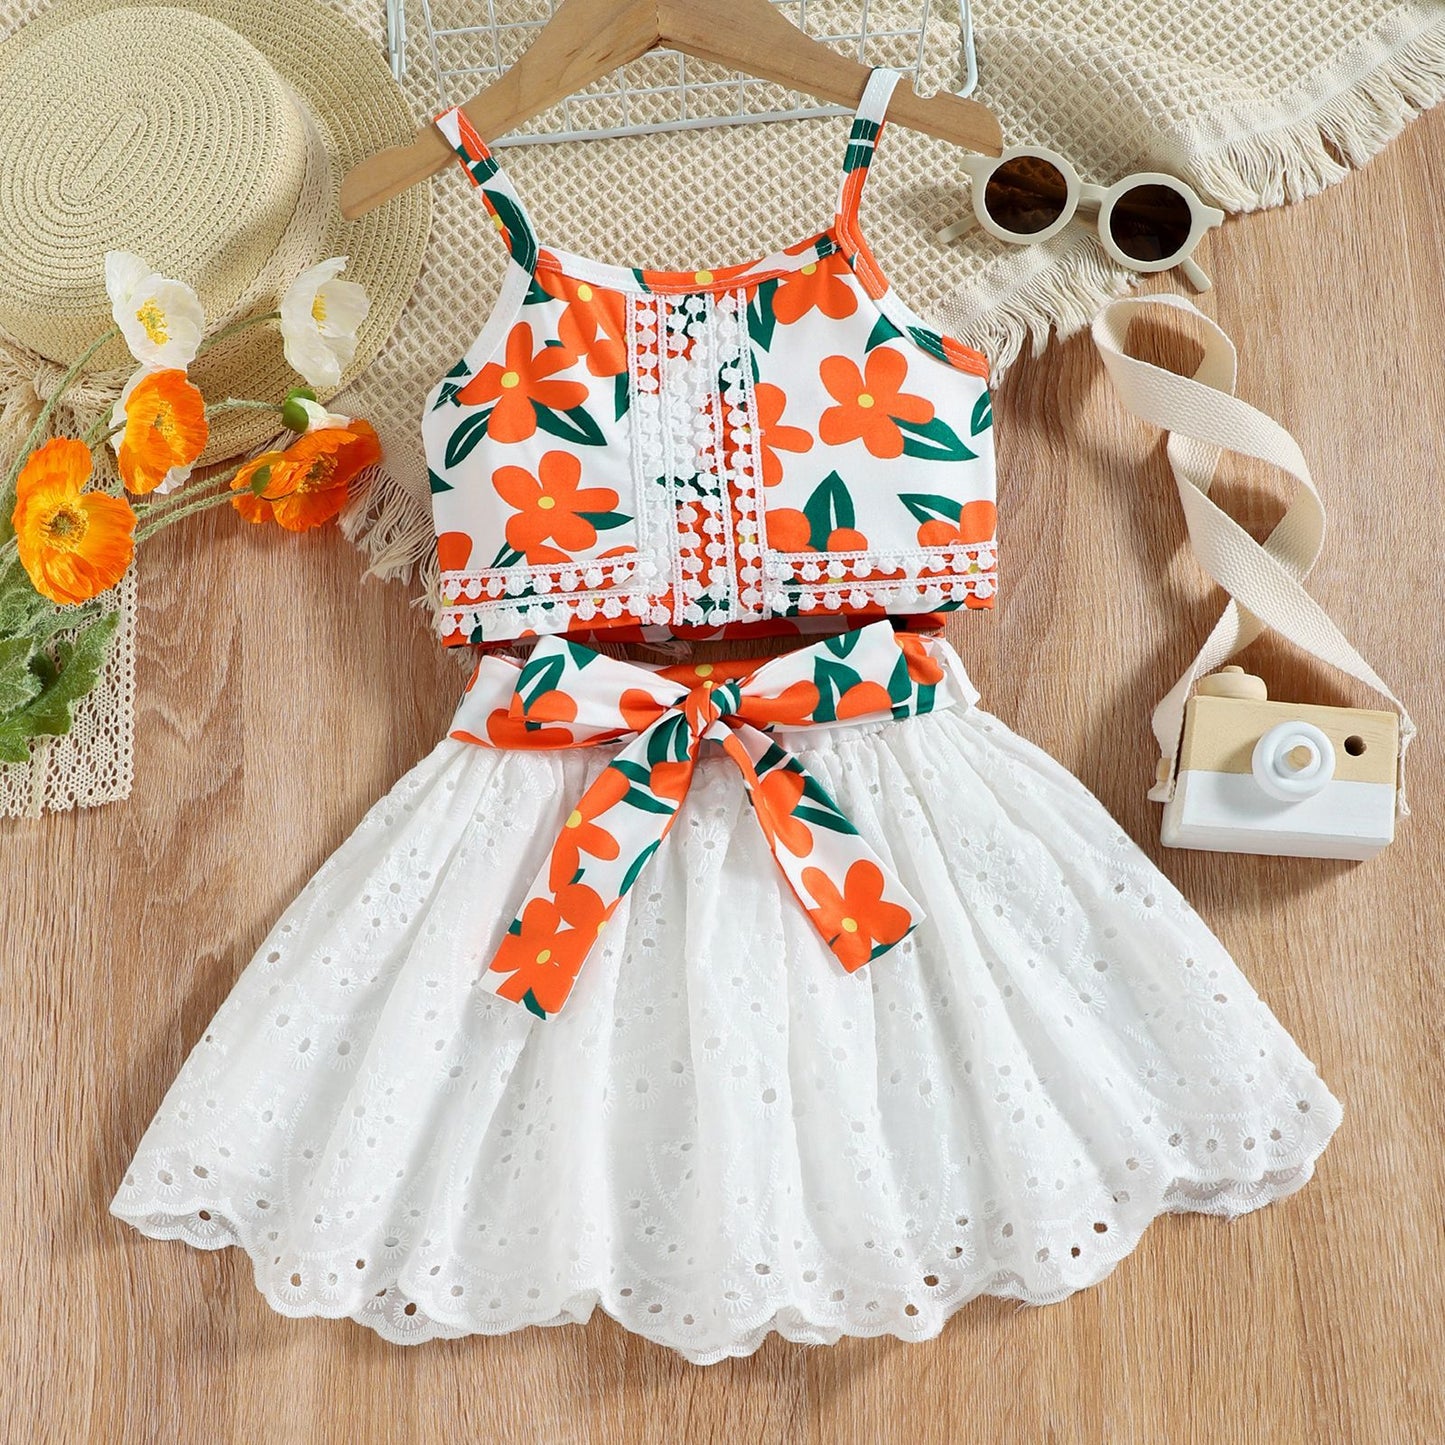  Orange Blossom Dress for baby girl Buy Online